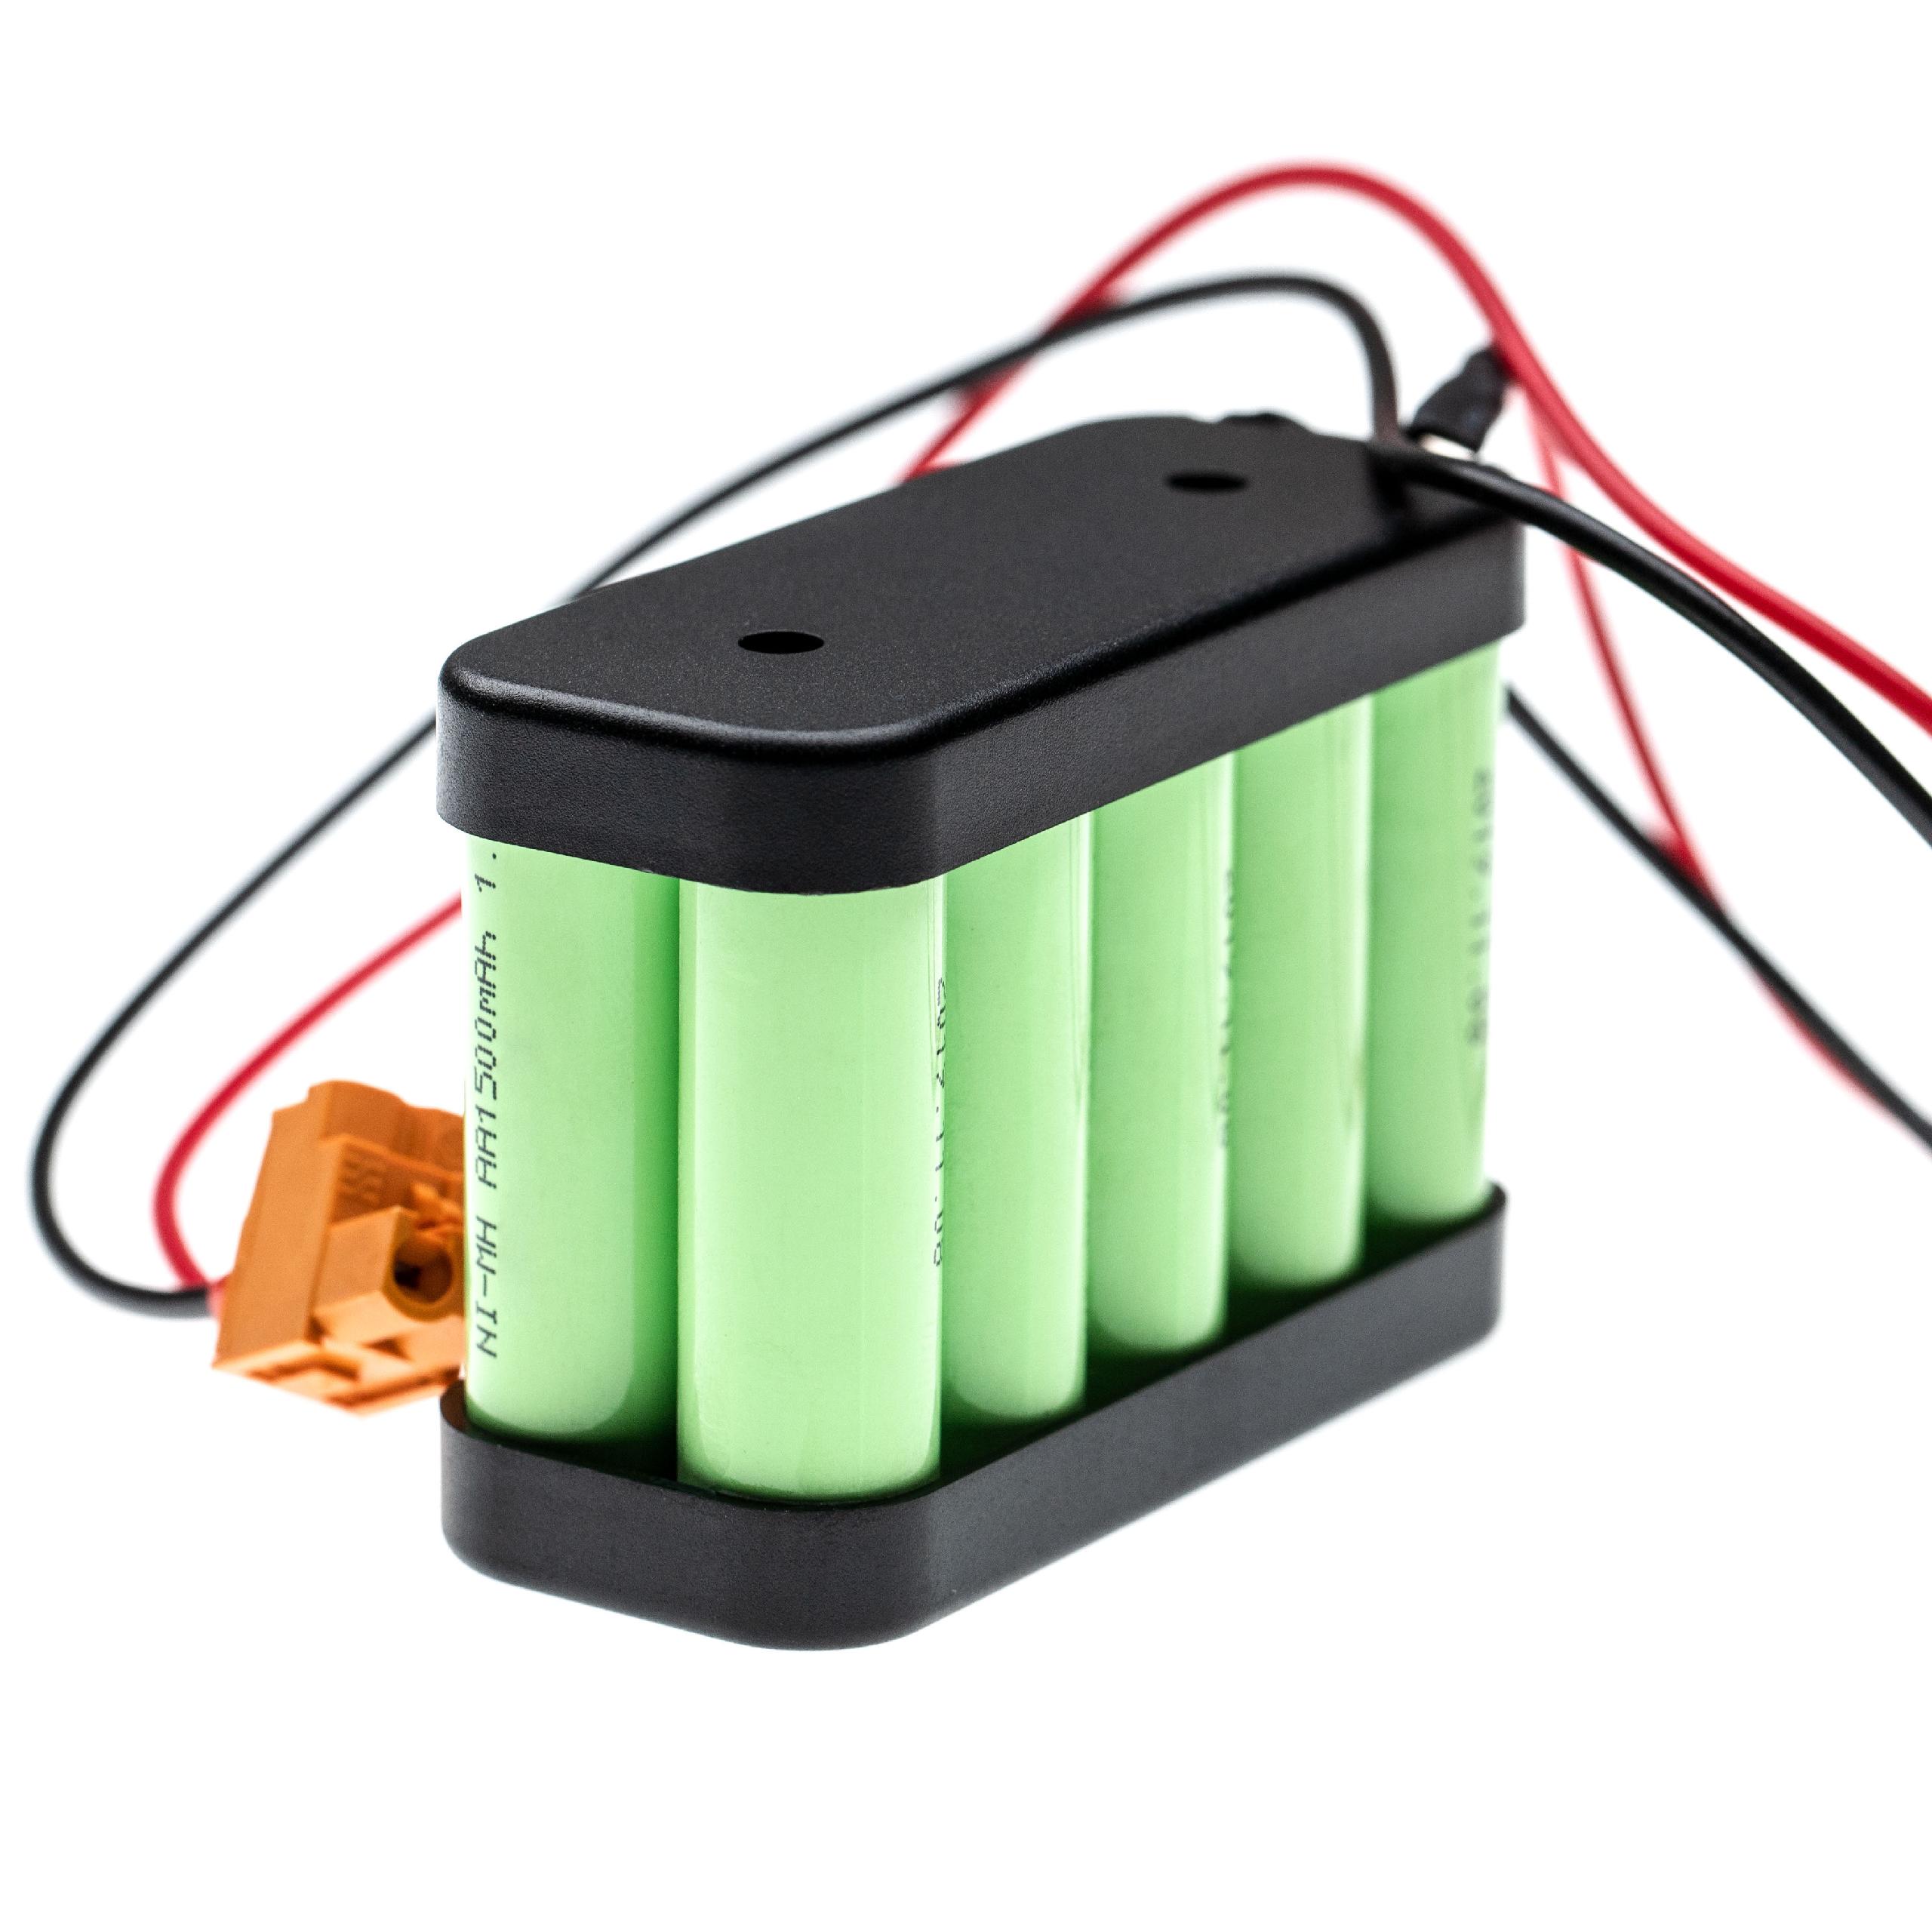 Sliding Gate Operator Battery Replacement for Besam 654745 - 1500mAh 12V NiMH